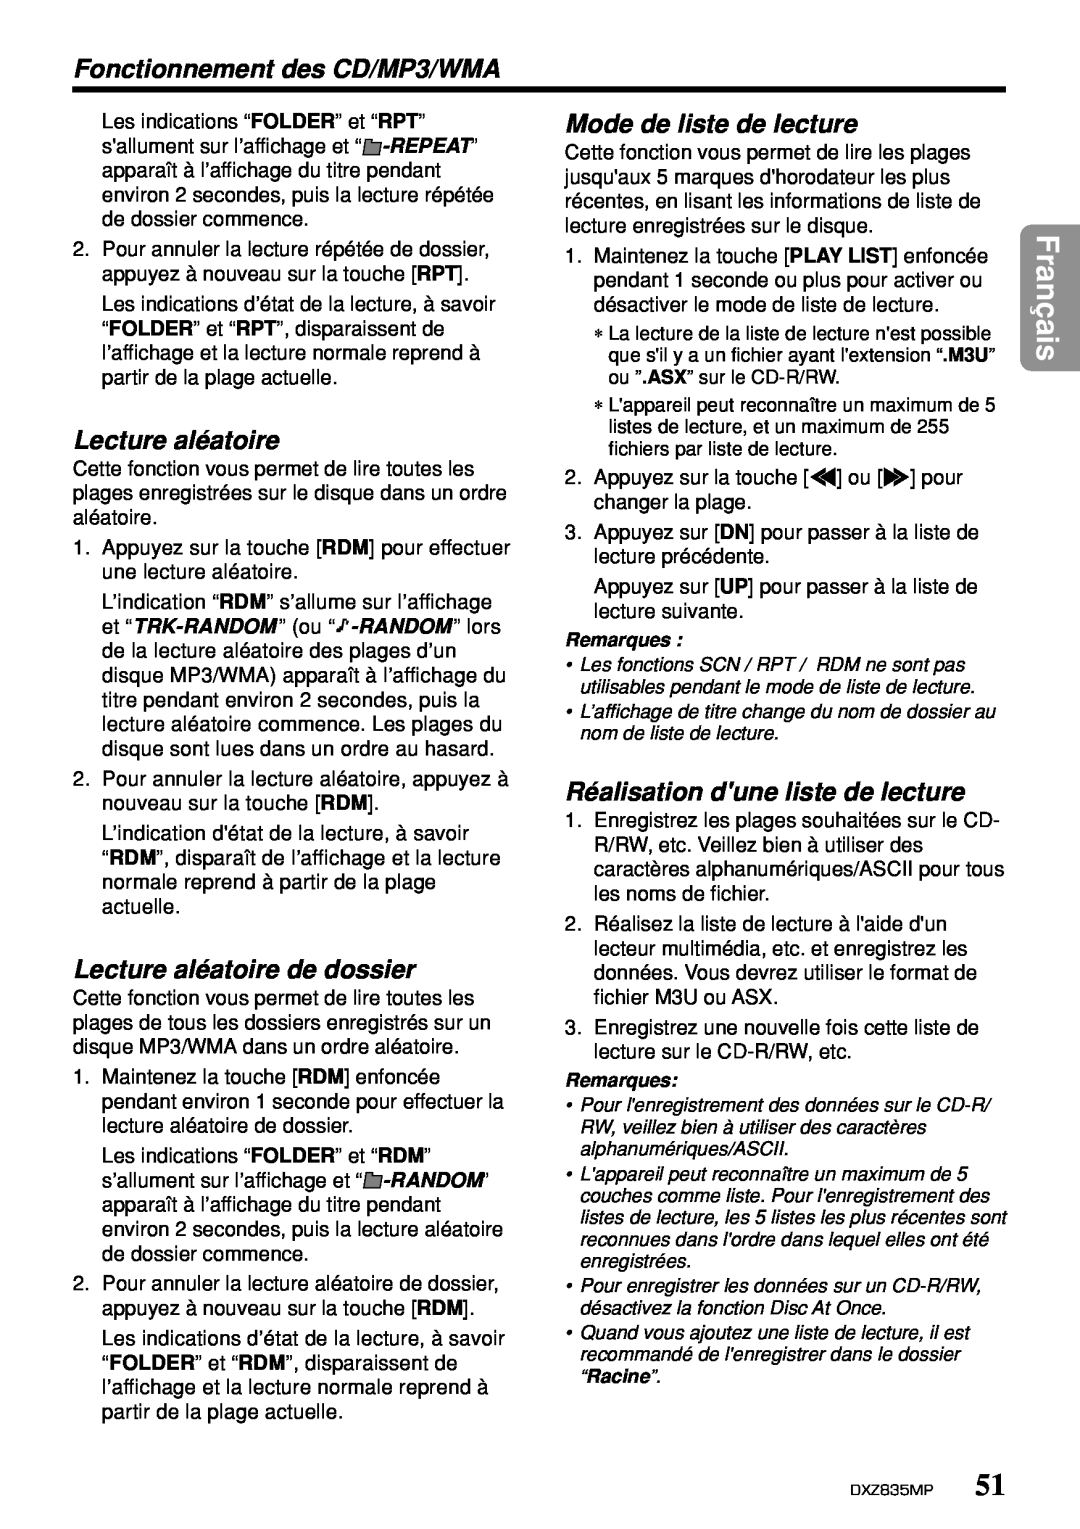 Clarion DXZ835MP Mode de liste de lecture, Lecture aléatoire de dossier, Réalisation dune liste de lecture, Français 